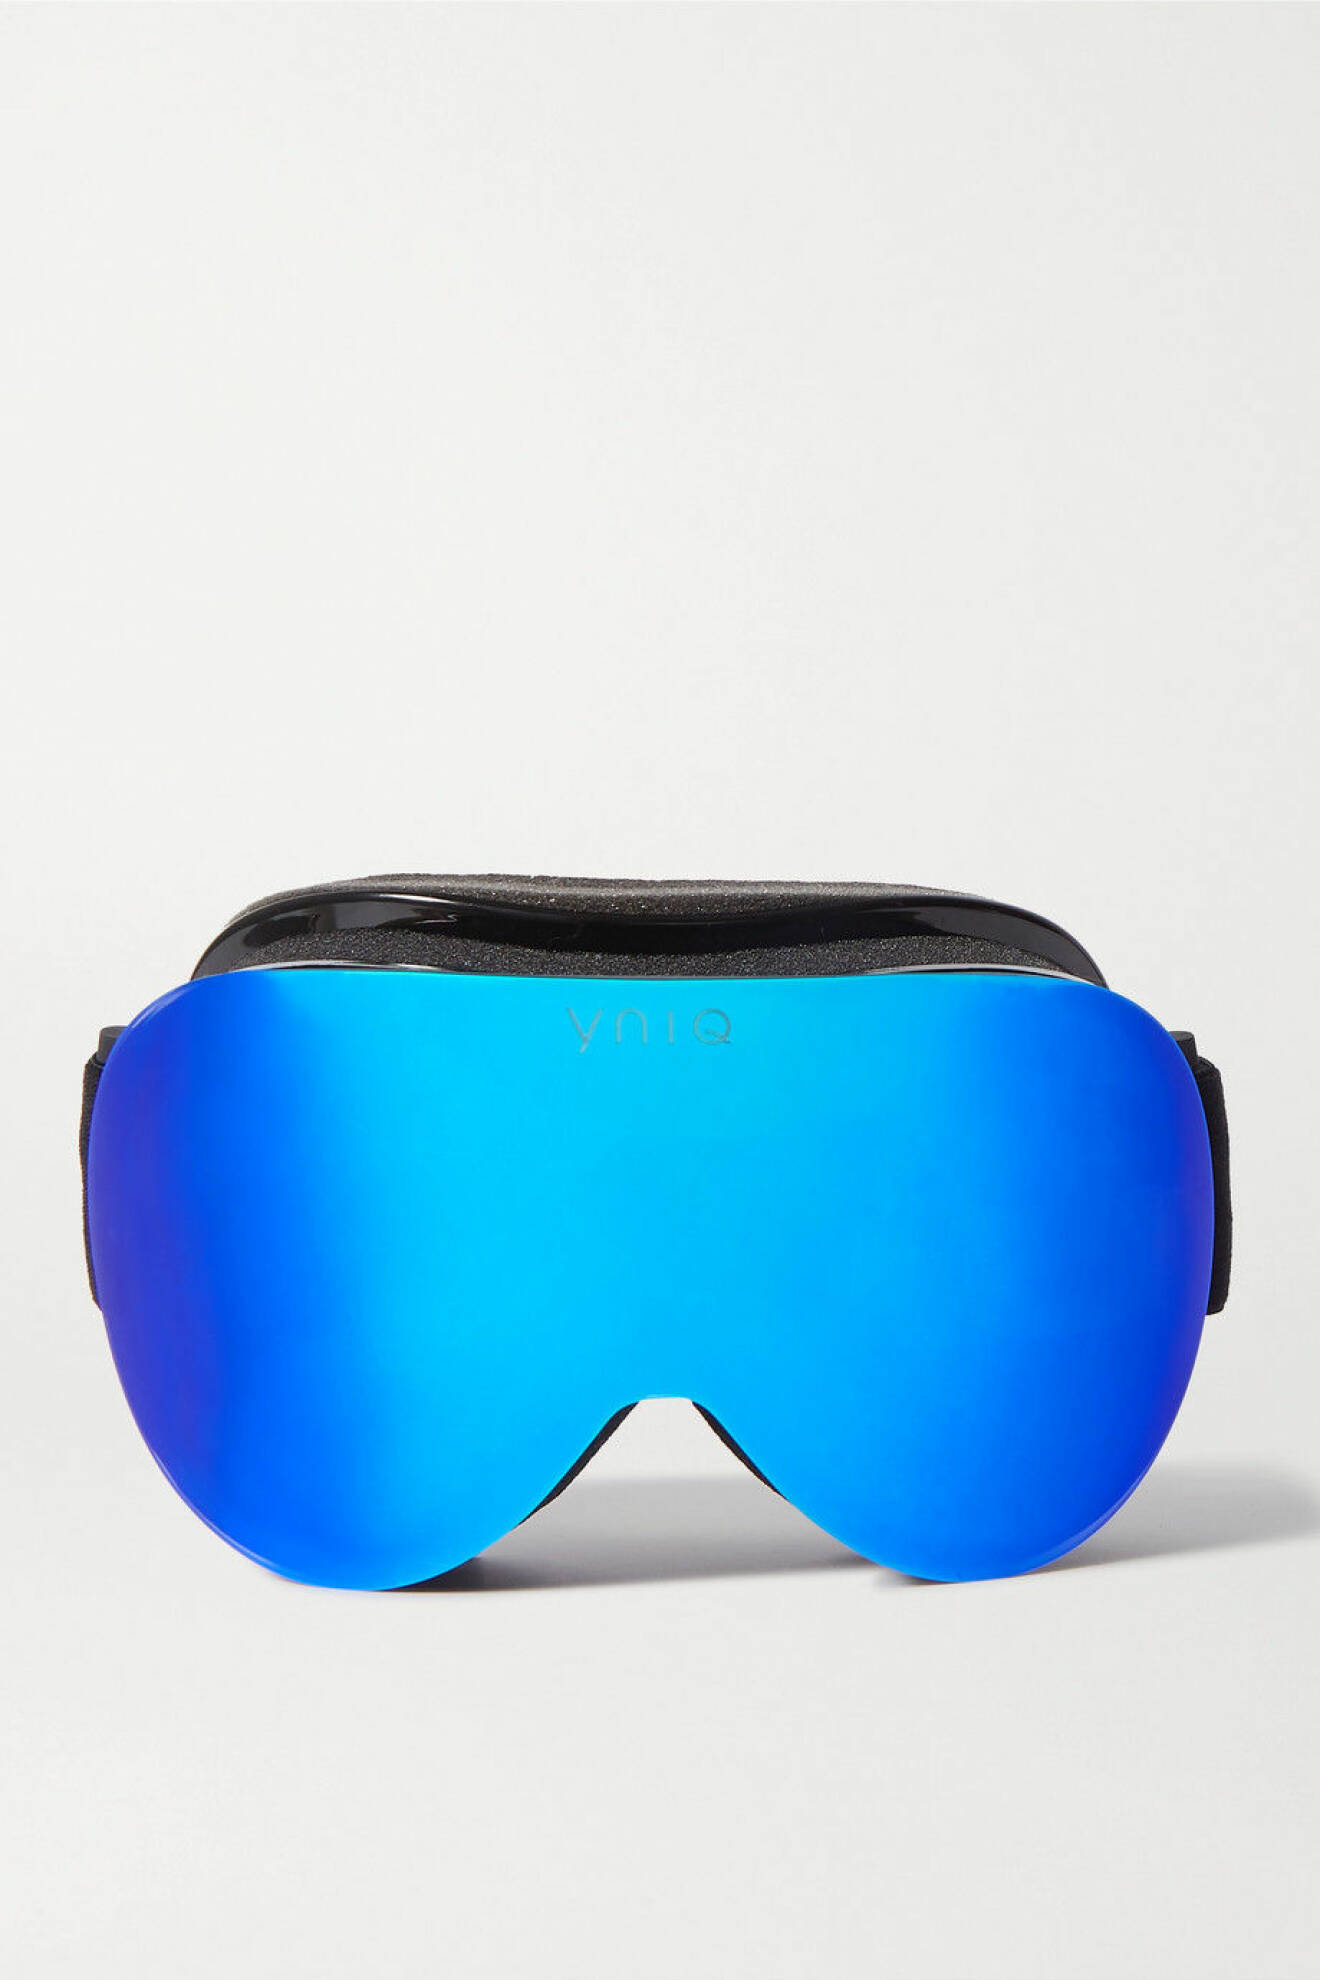 Snygga skidglasögon i en skarp rejäl nyans av blå från YNIQ's.